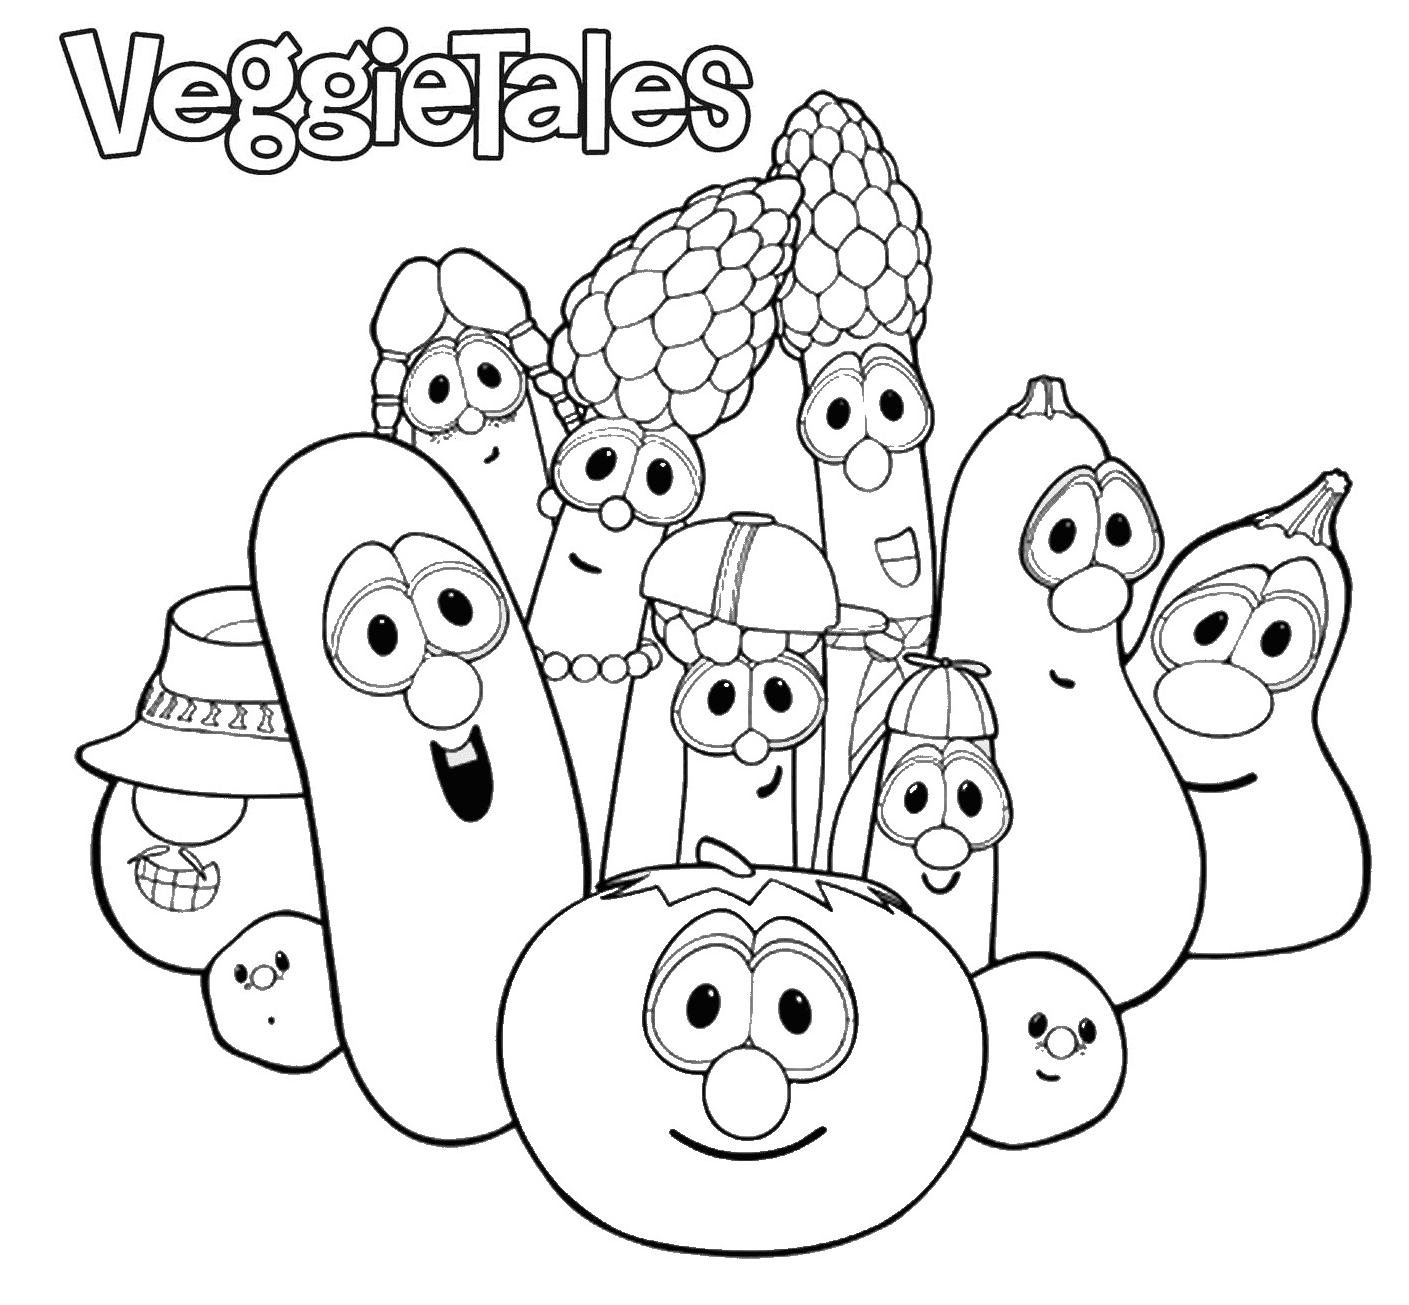 VeggieTales van VeggieTales